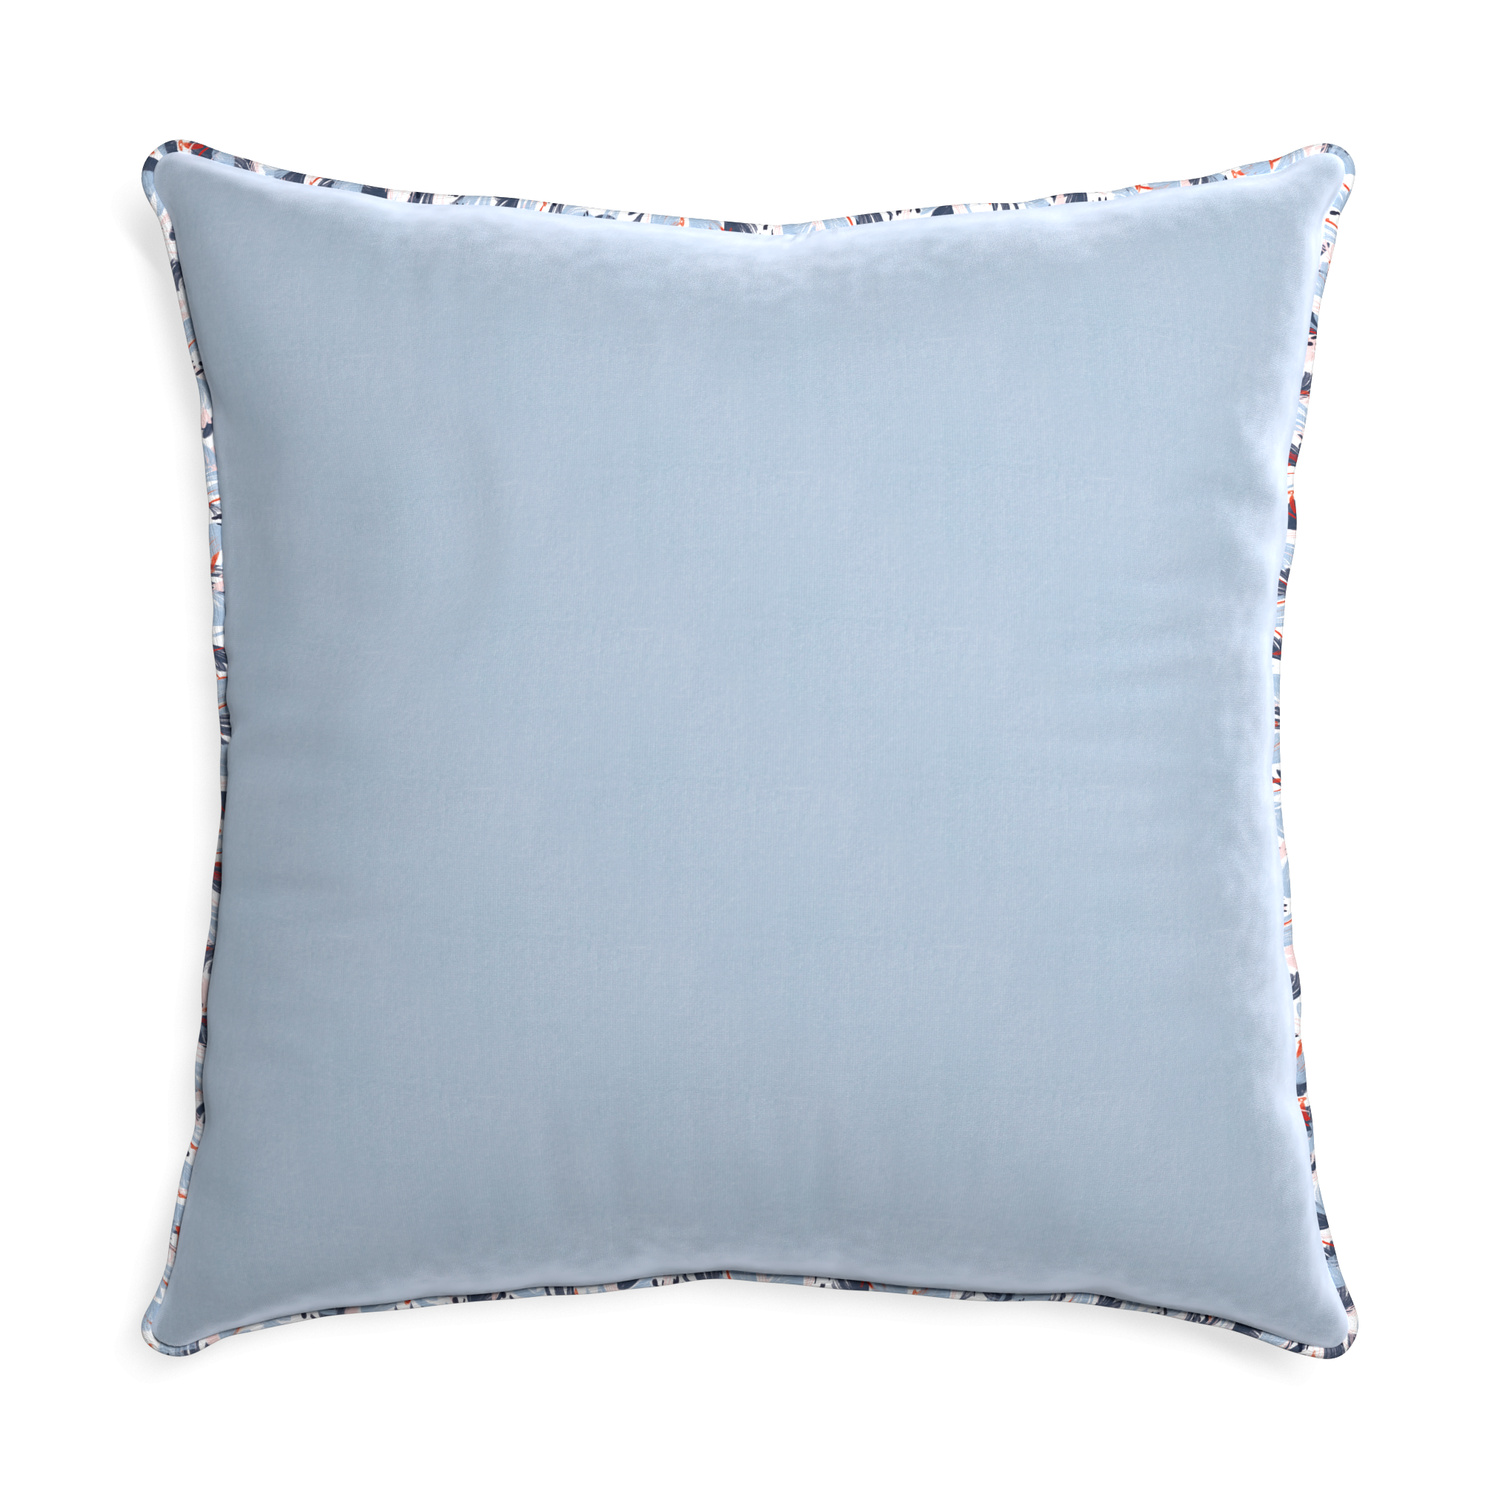 Euro-sham sky velvet custom pillow with e piping on white background